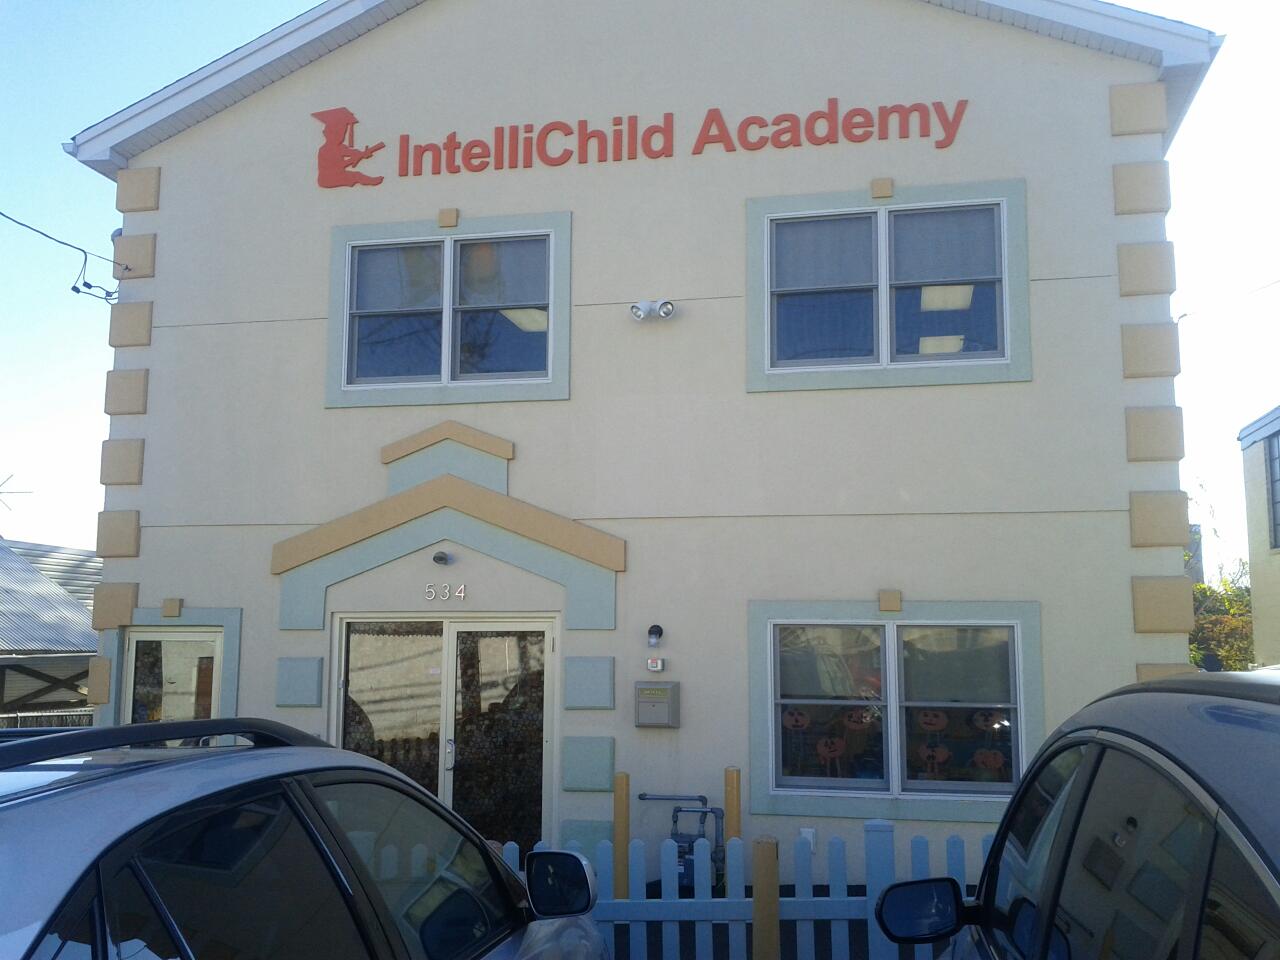 Intellichild Academy